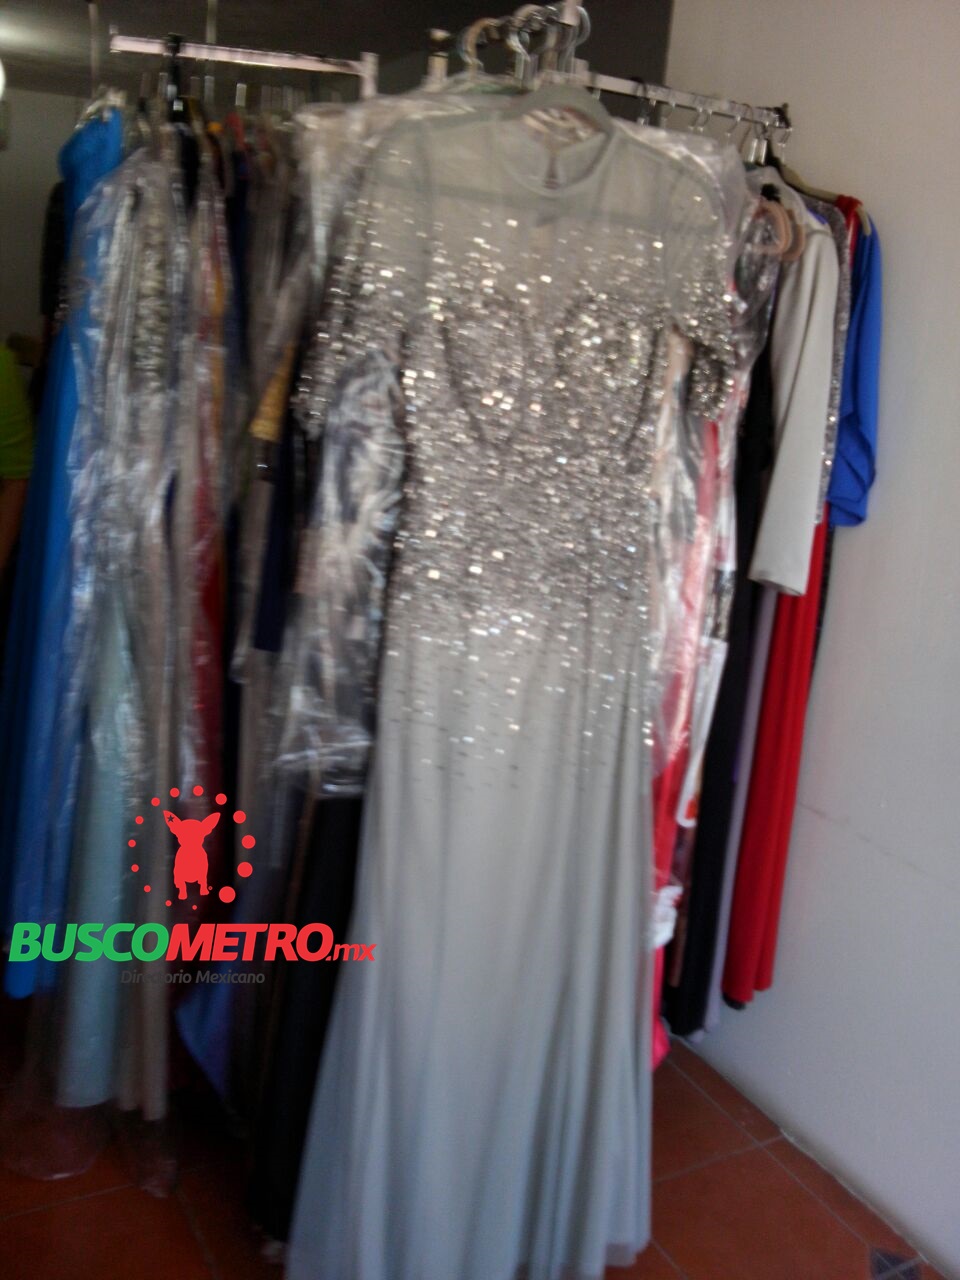 BUSCOMETRO | Cliente: Divana Renta de Vestidos